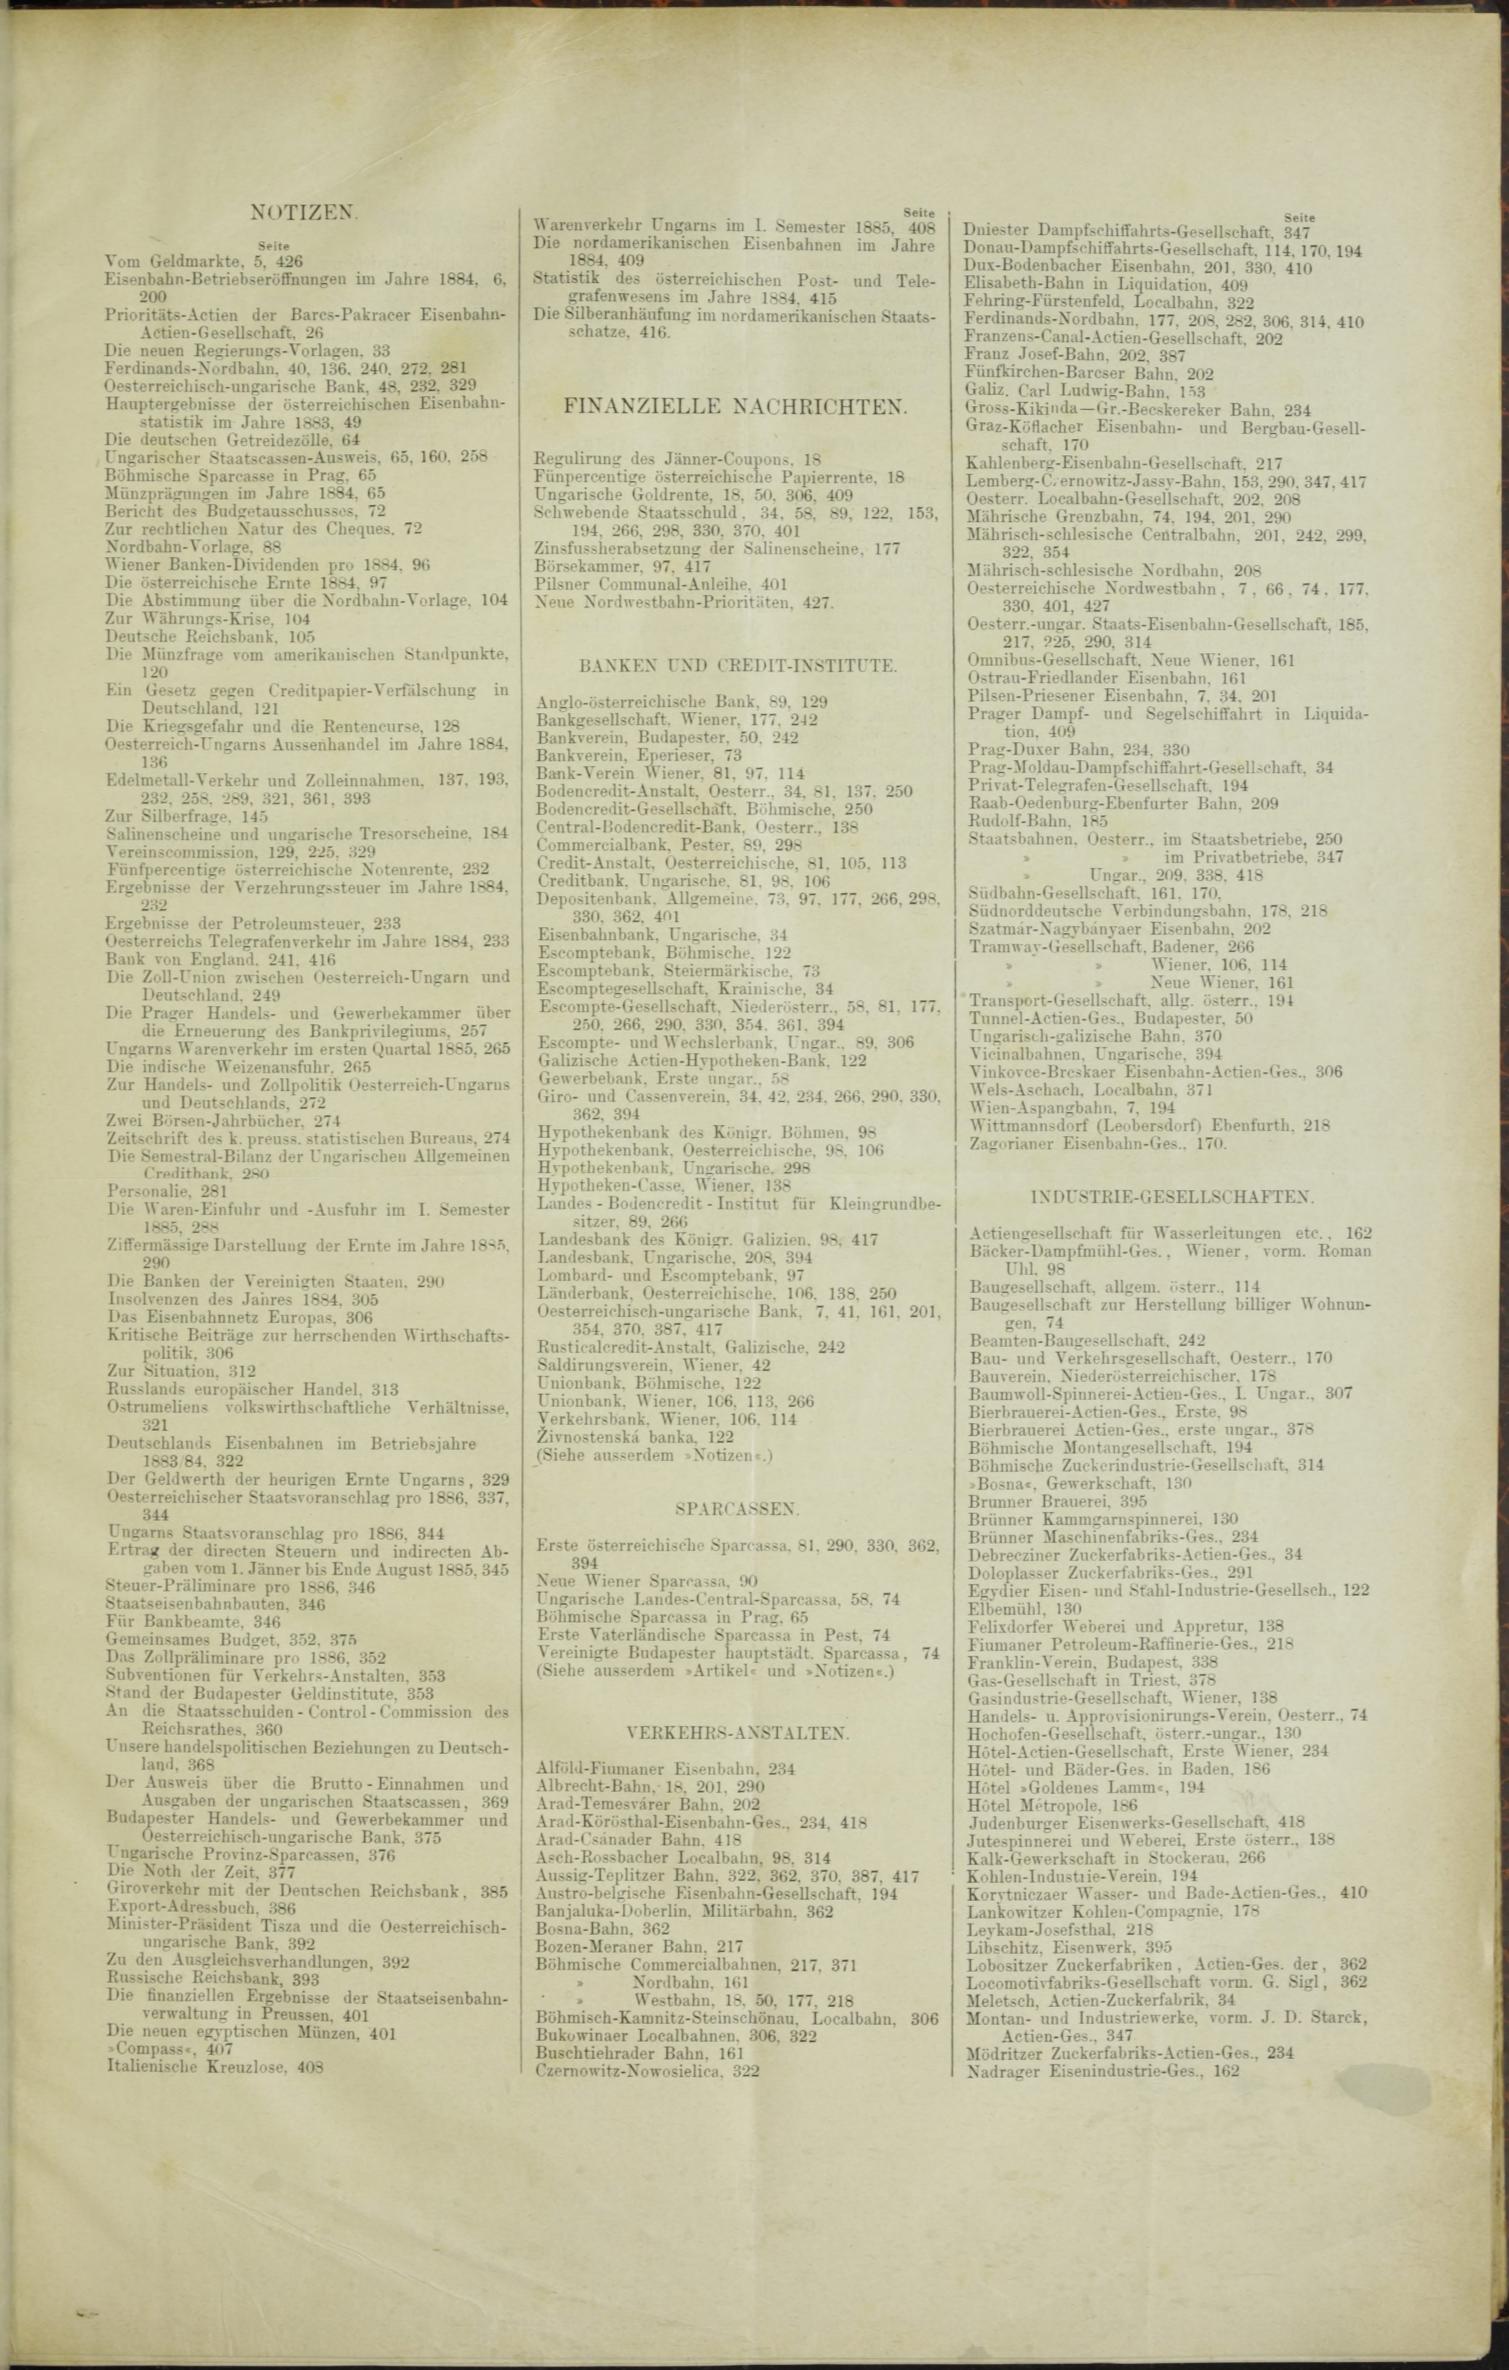 Der Tresor 31.12.1885 - Seite 11